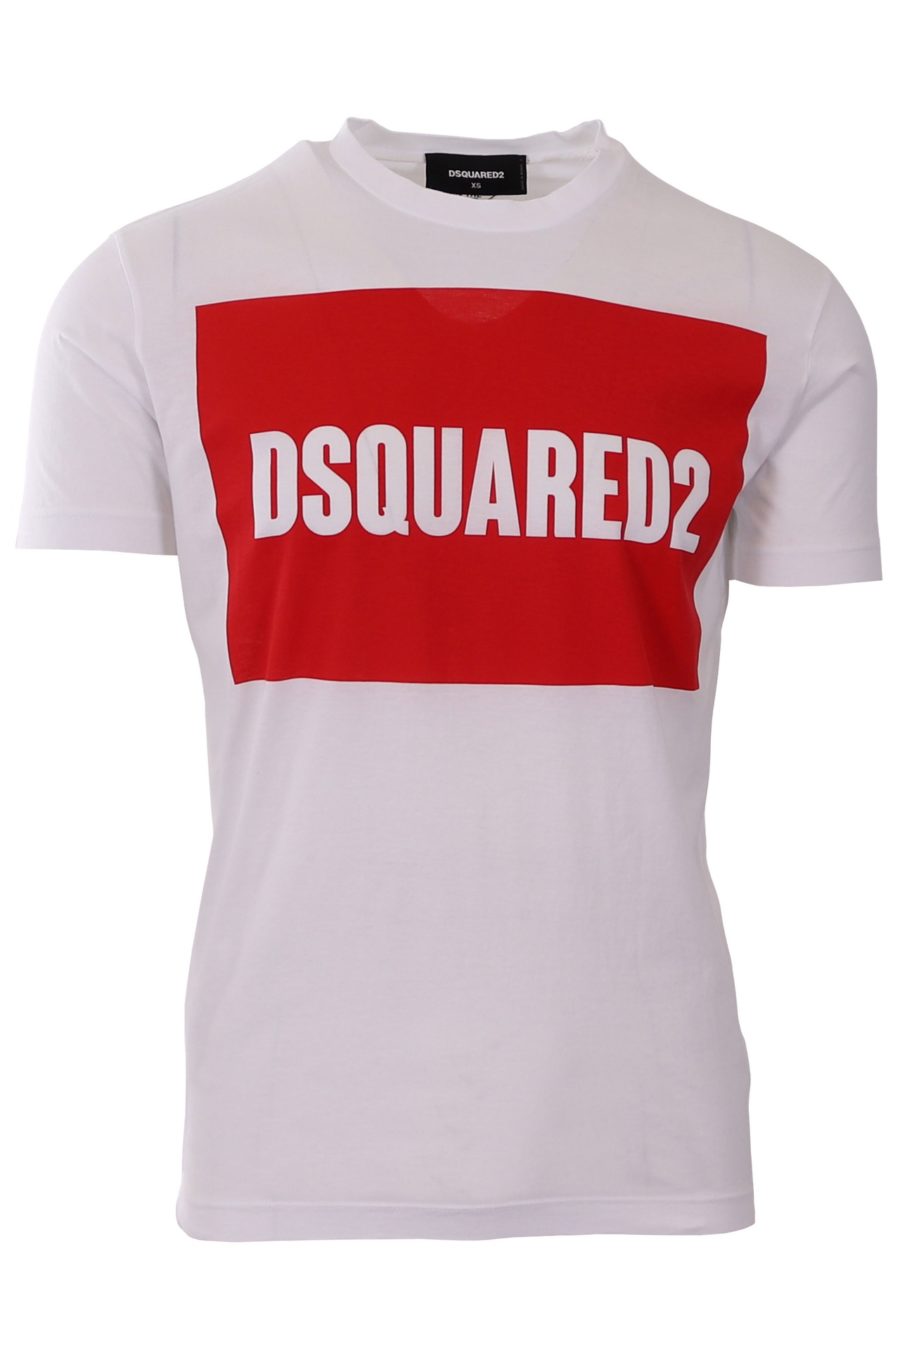 T-Shirt Dsquared2 weiß mit rotem quadratischem Logo - 8b8b758e6c984718df449714c3f4133030288ff87b